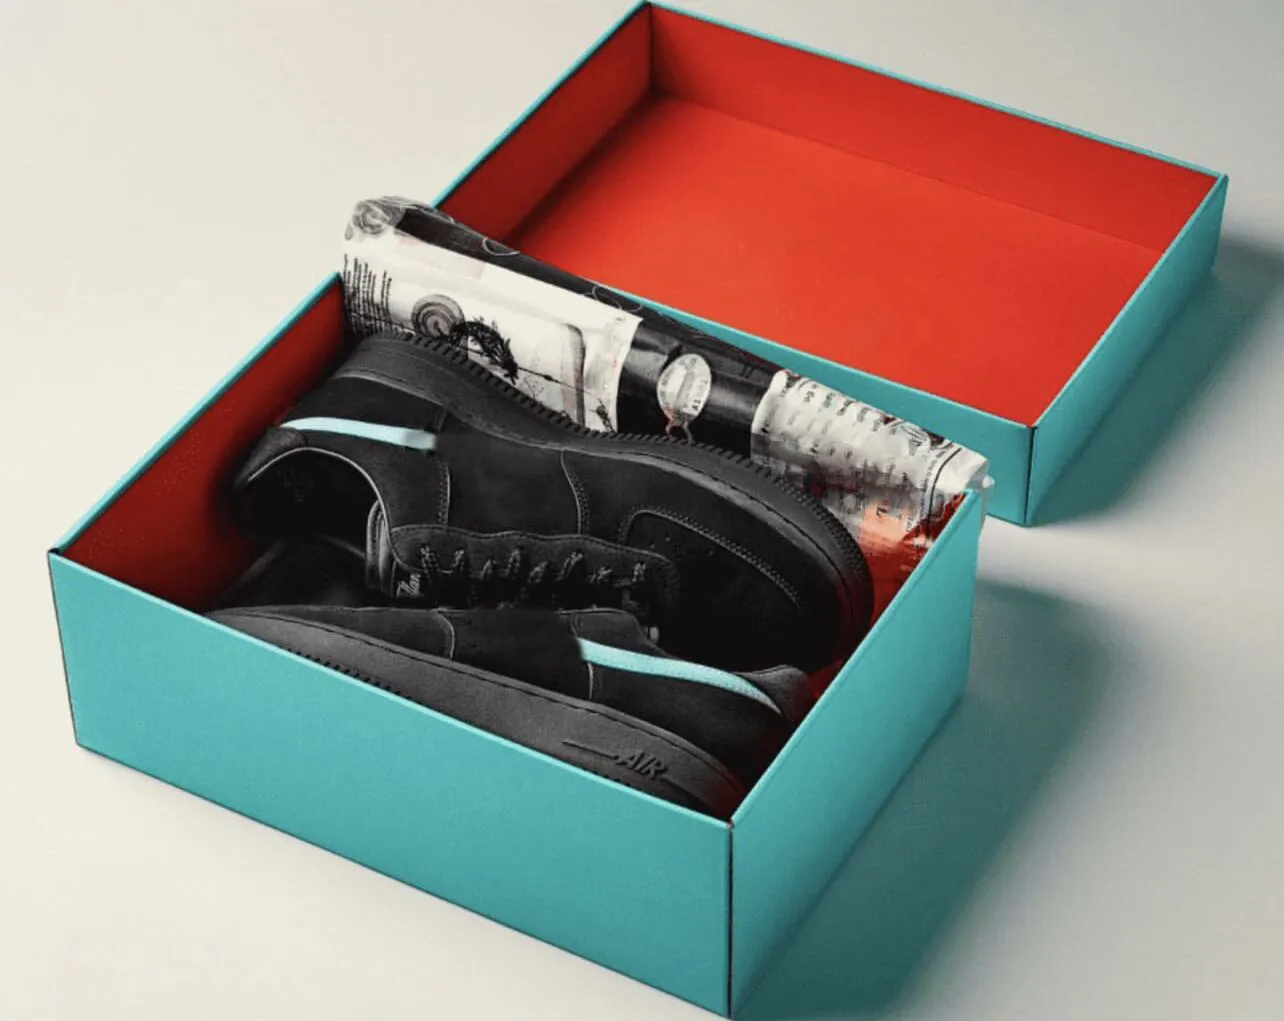 Otantik Tiffany x 1 Düşük Mens Koşu Ayakkabı Sneaker Siyah Mavi Çok Renkli DZ1382-001 Eğitmenler Erkek Kadın Spor Spor ayakkabıları Orijinal Kutu Boyutu 36-46